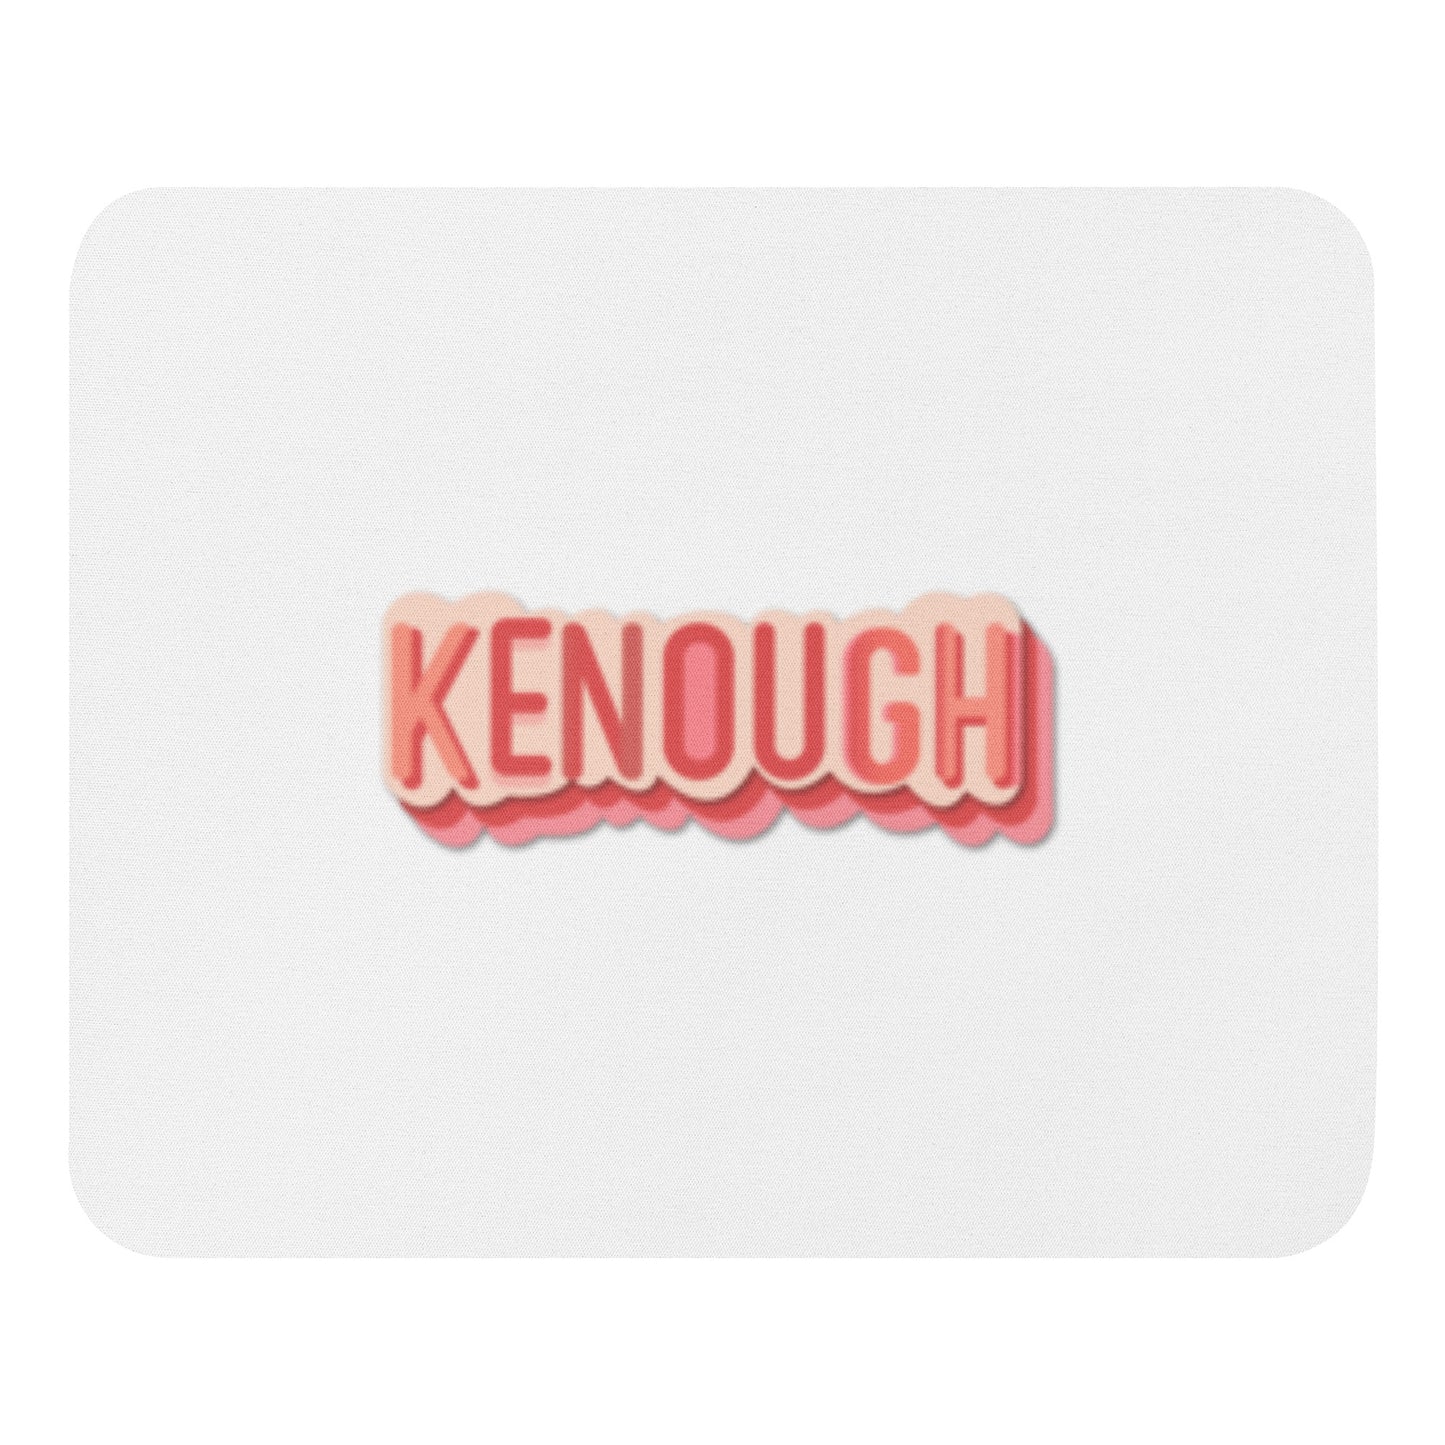 Kenough Mouse pad